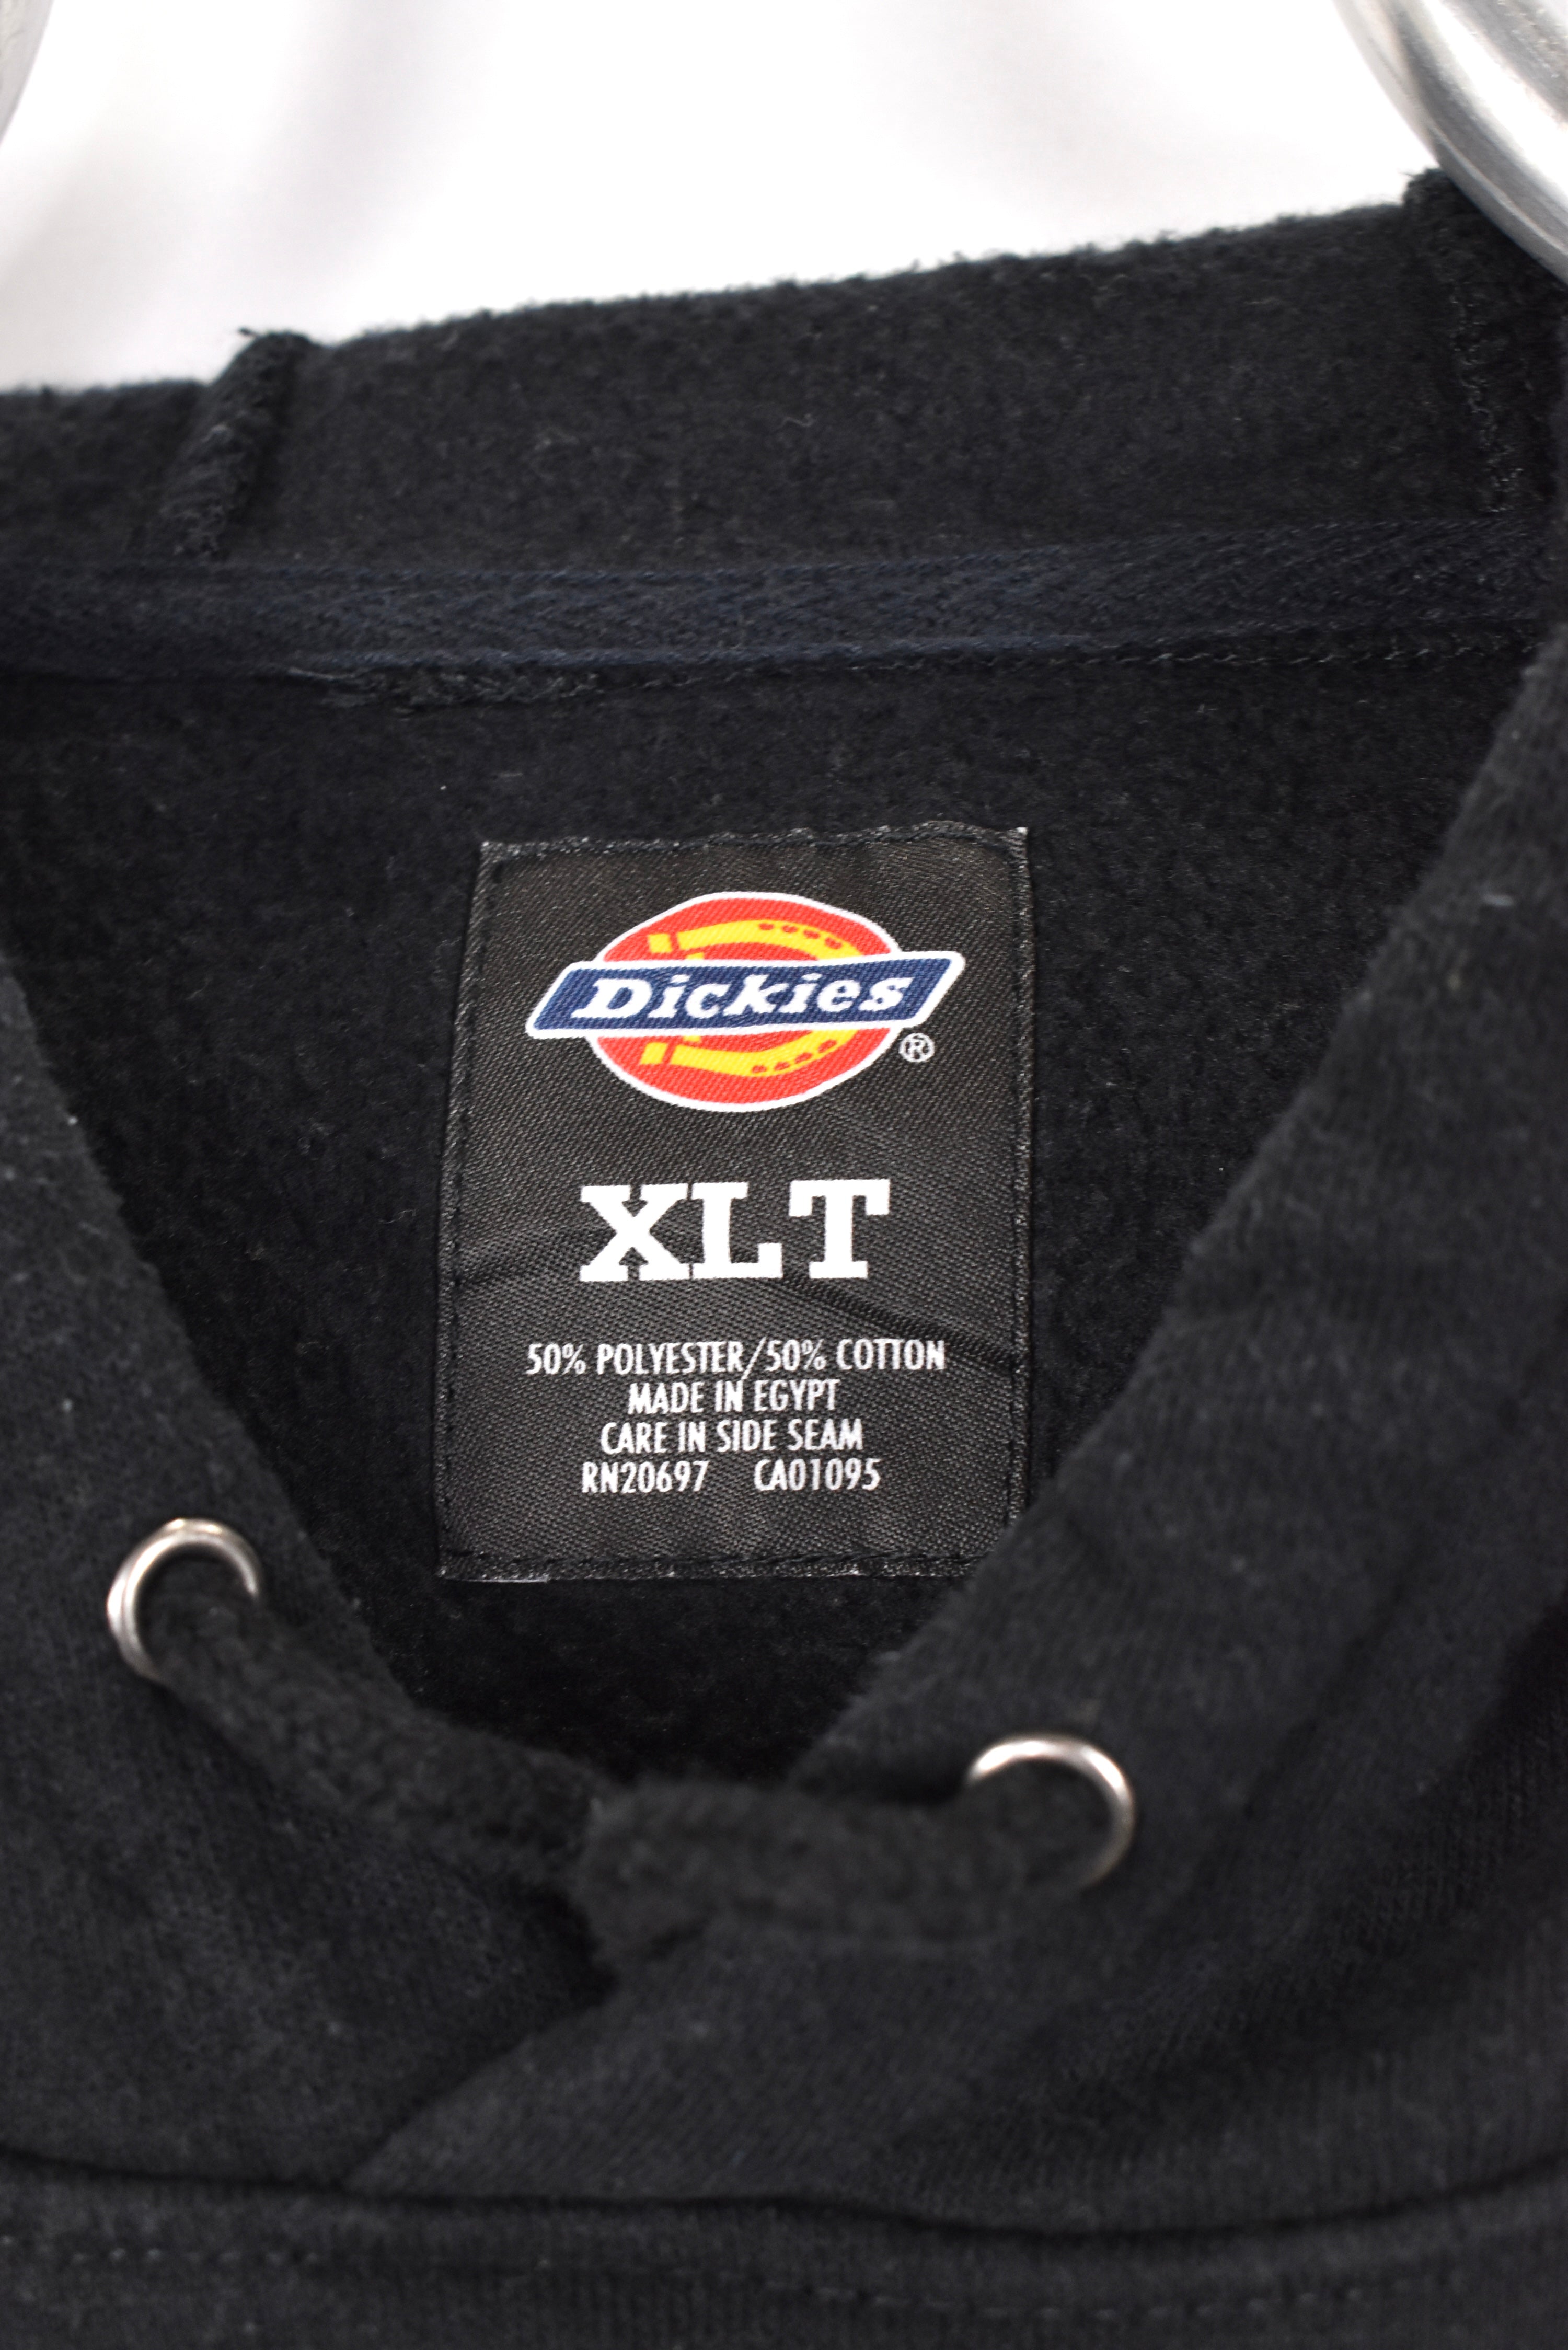 Vintage Dickies hoodie, black basic sweatshirt - AU XL DICKIES